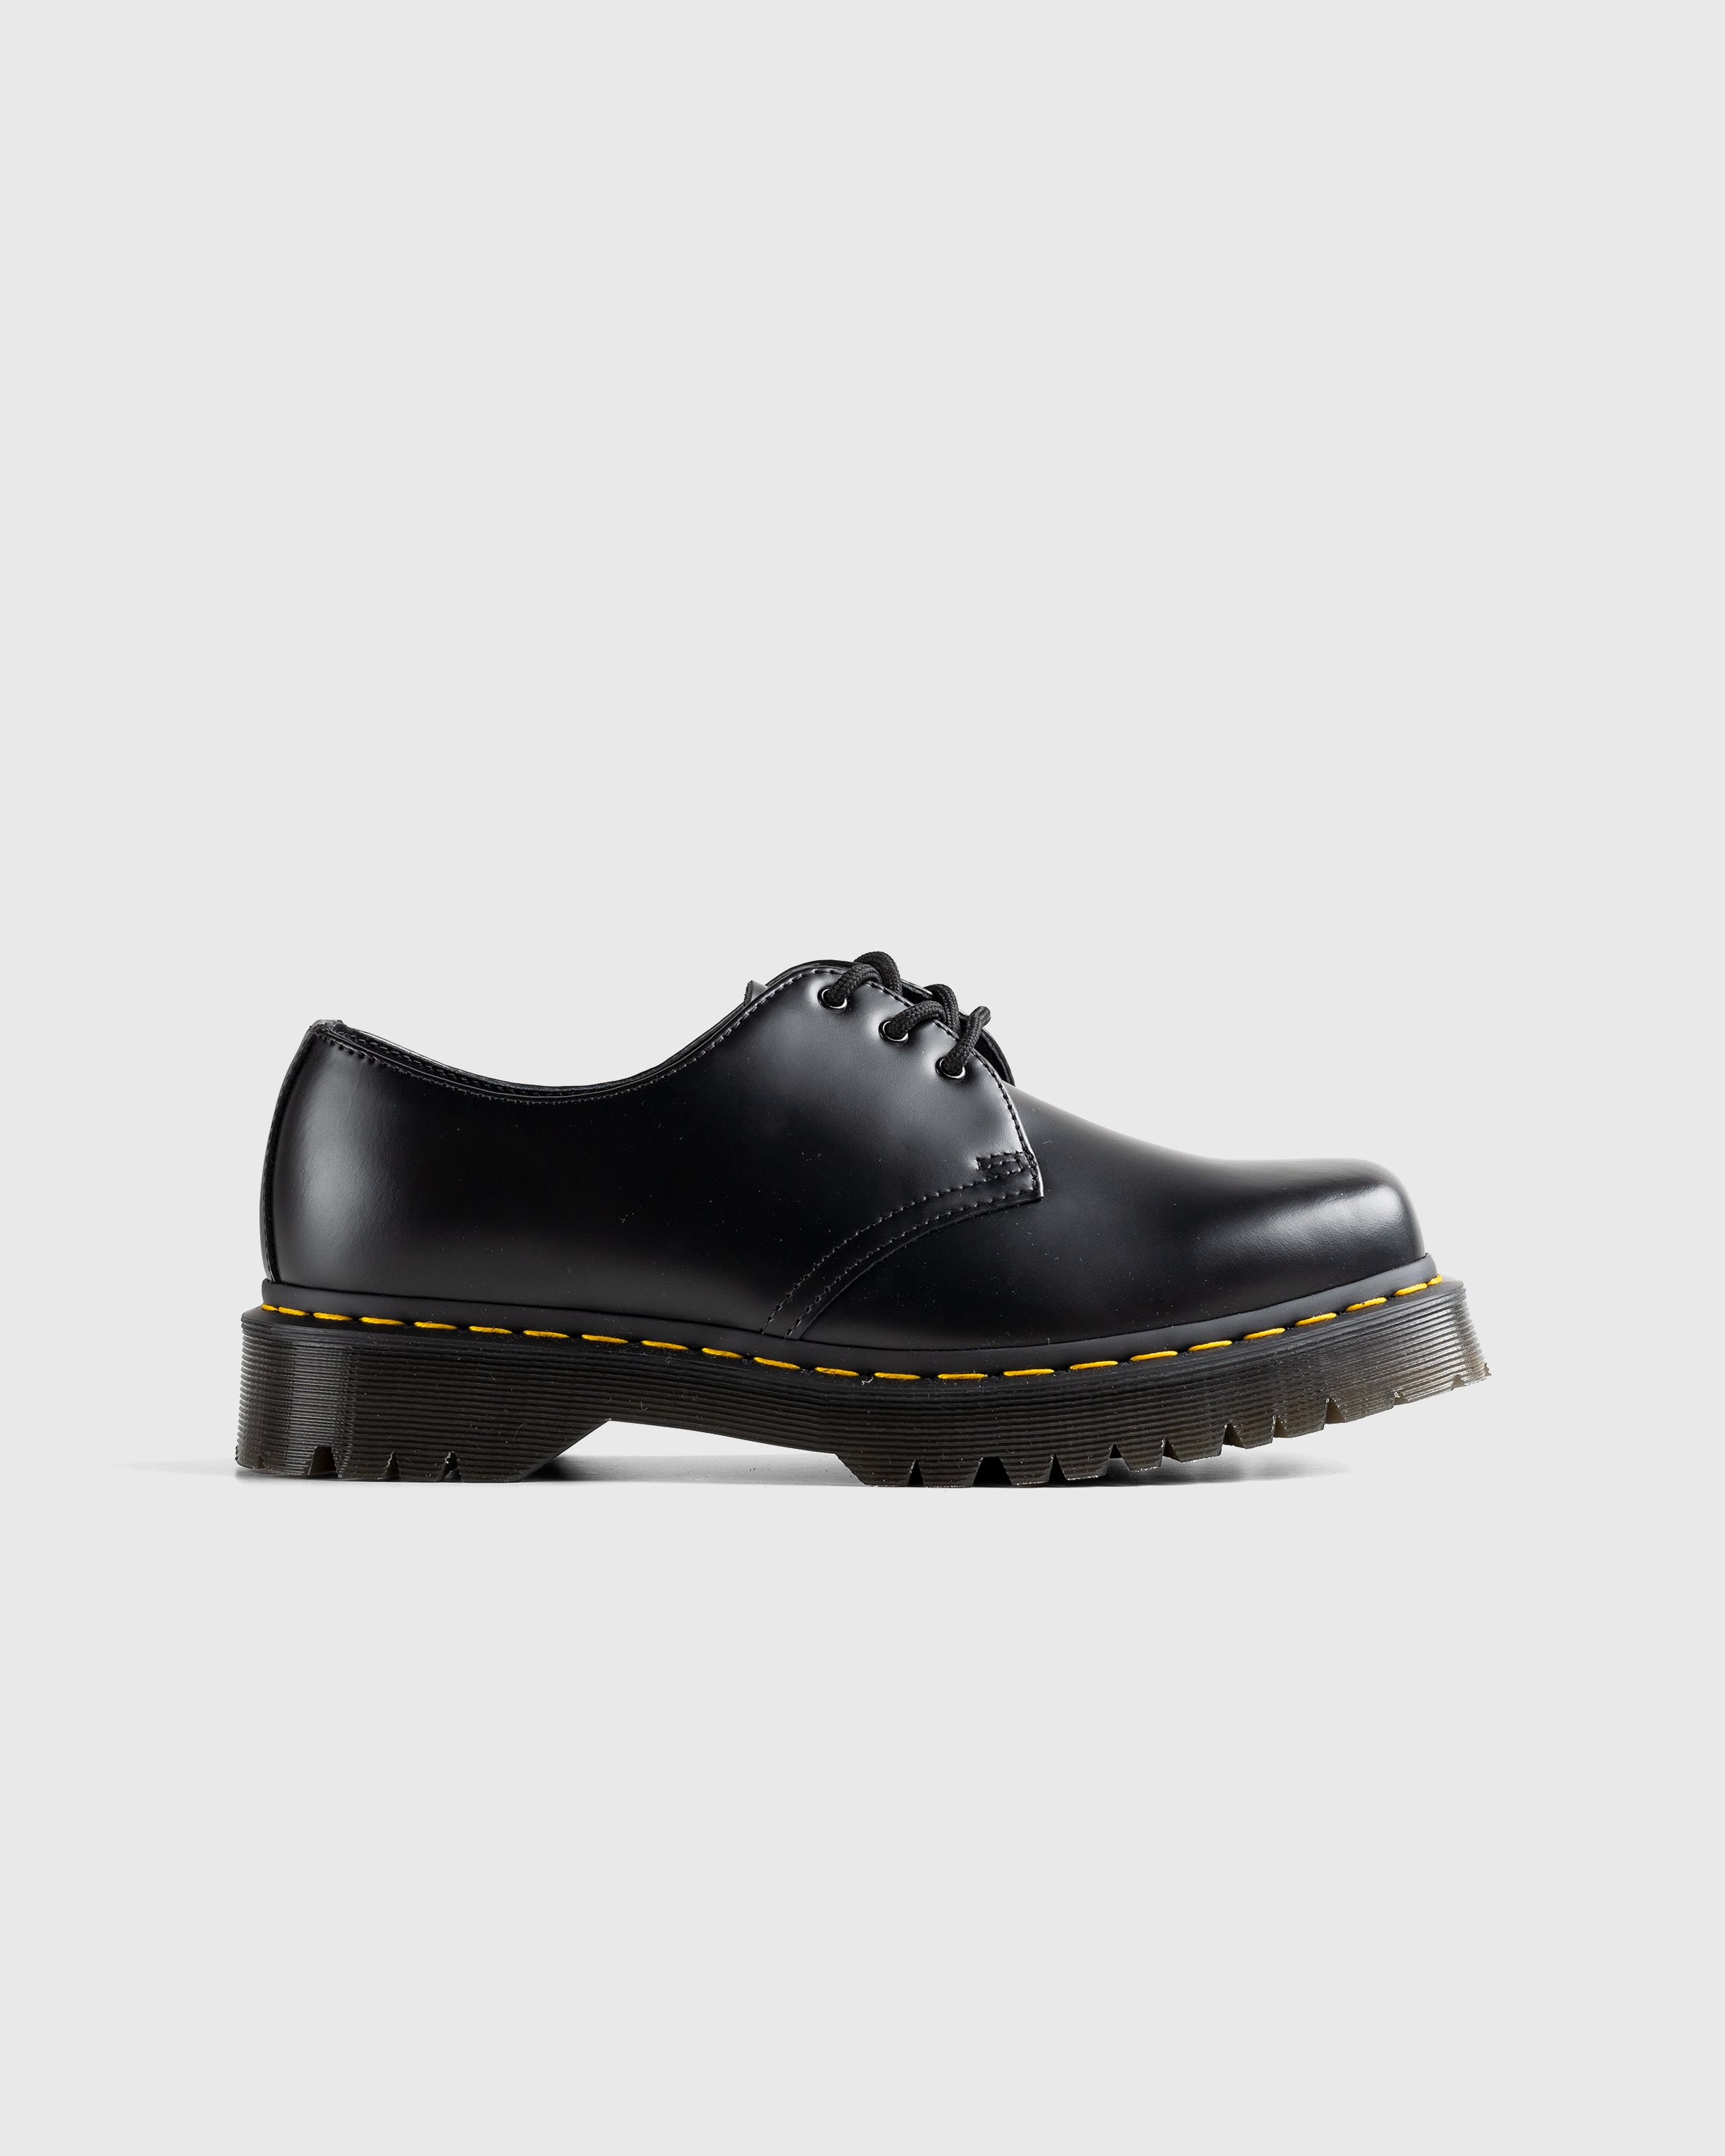 Dr. Martens - 1461 Bex Squared Black Polished Smooth - Footwear - Black - Image 1